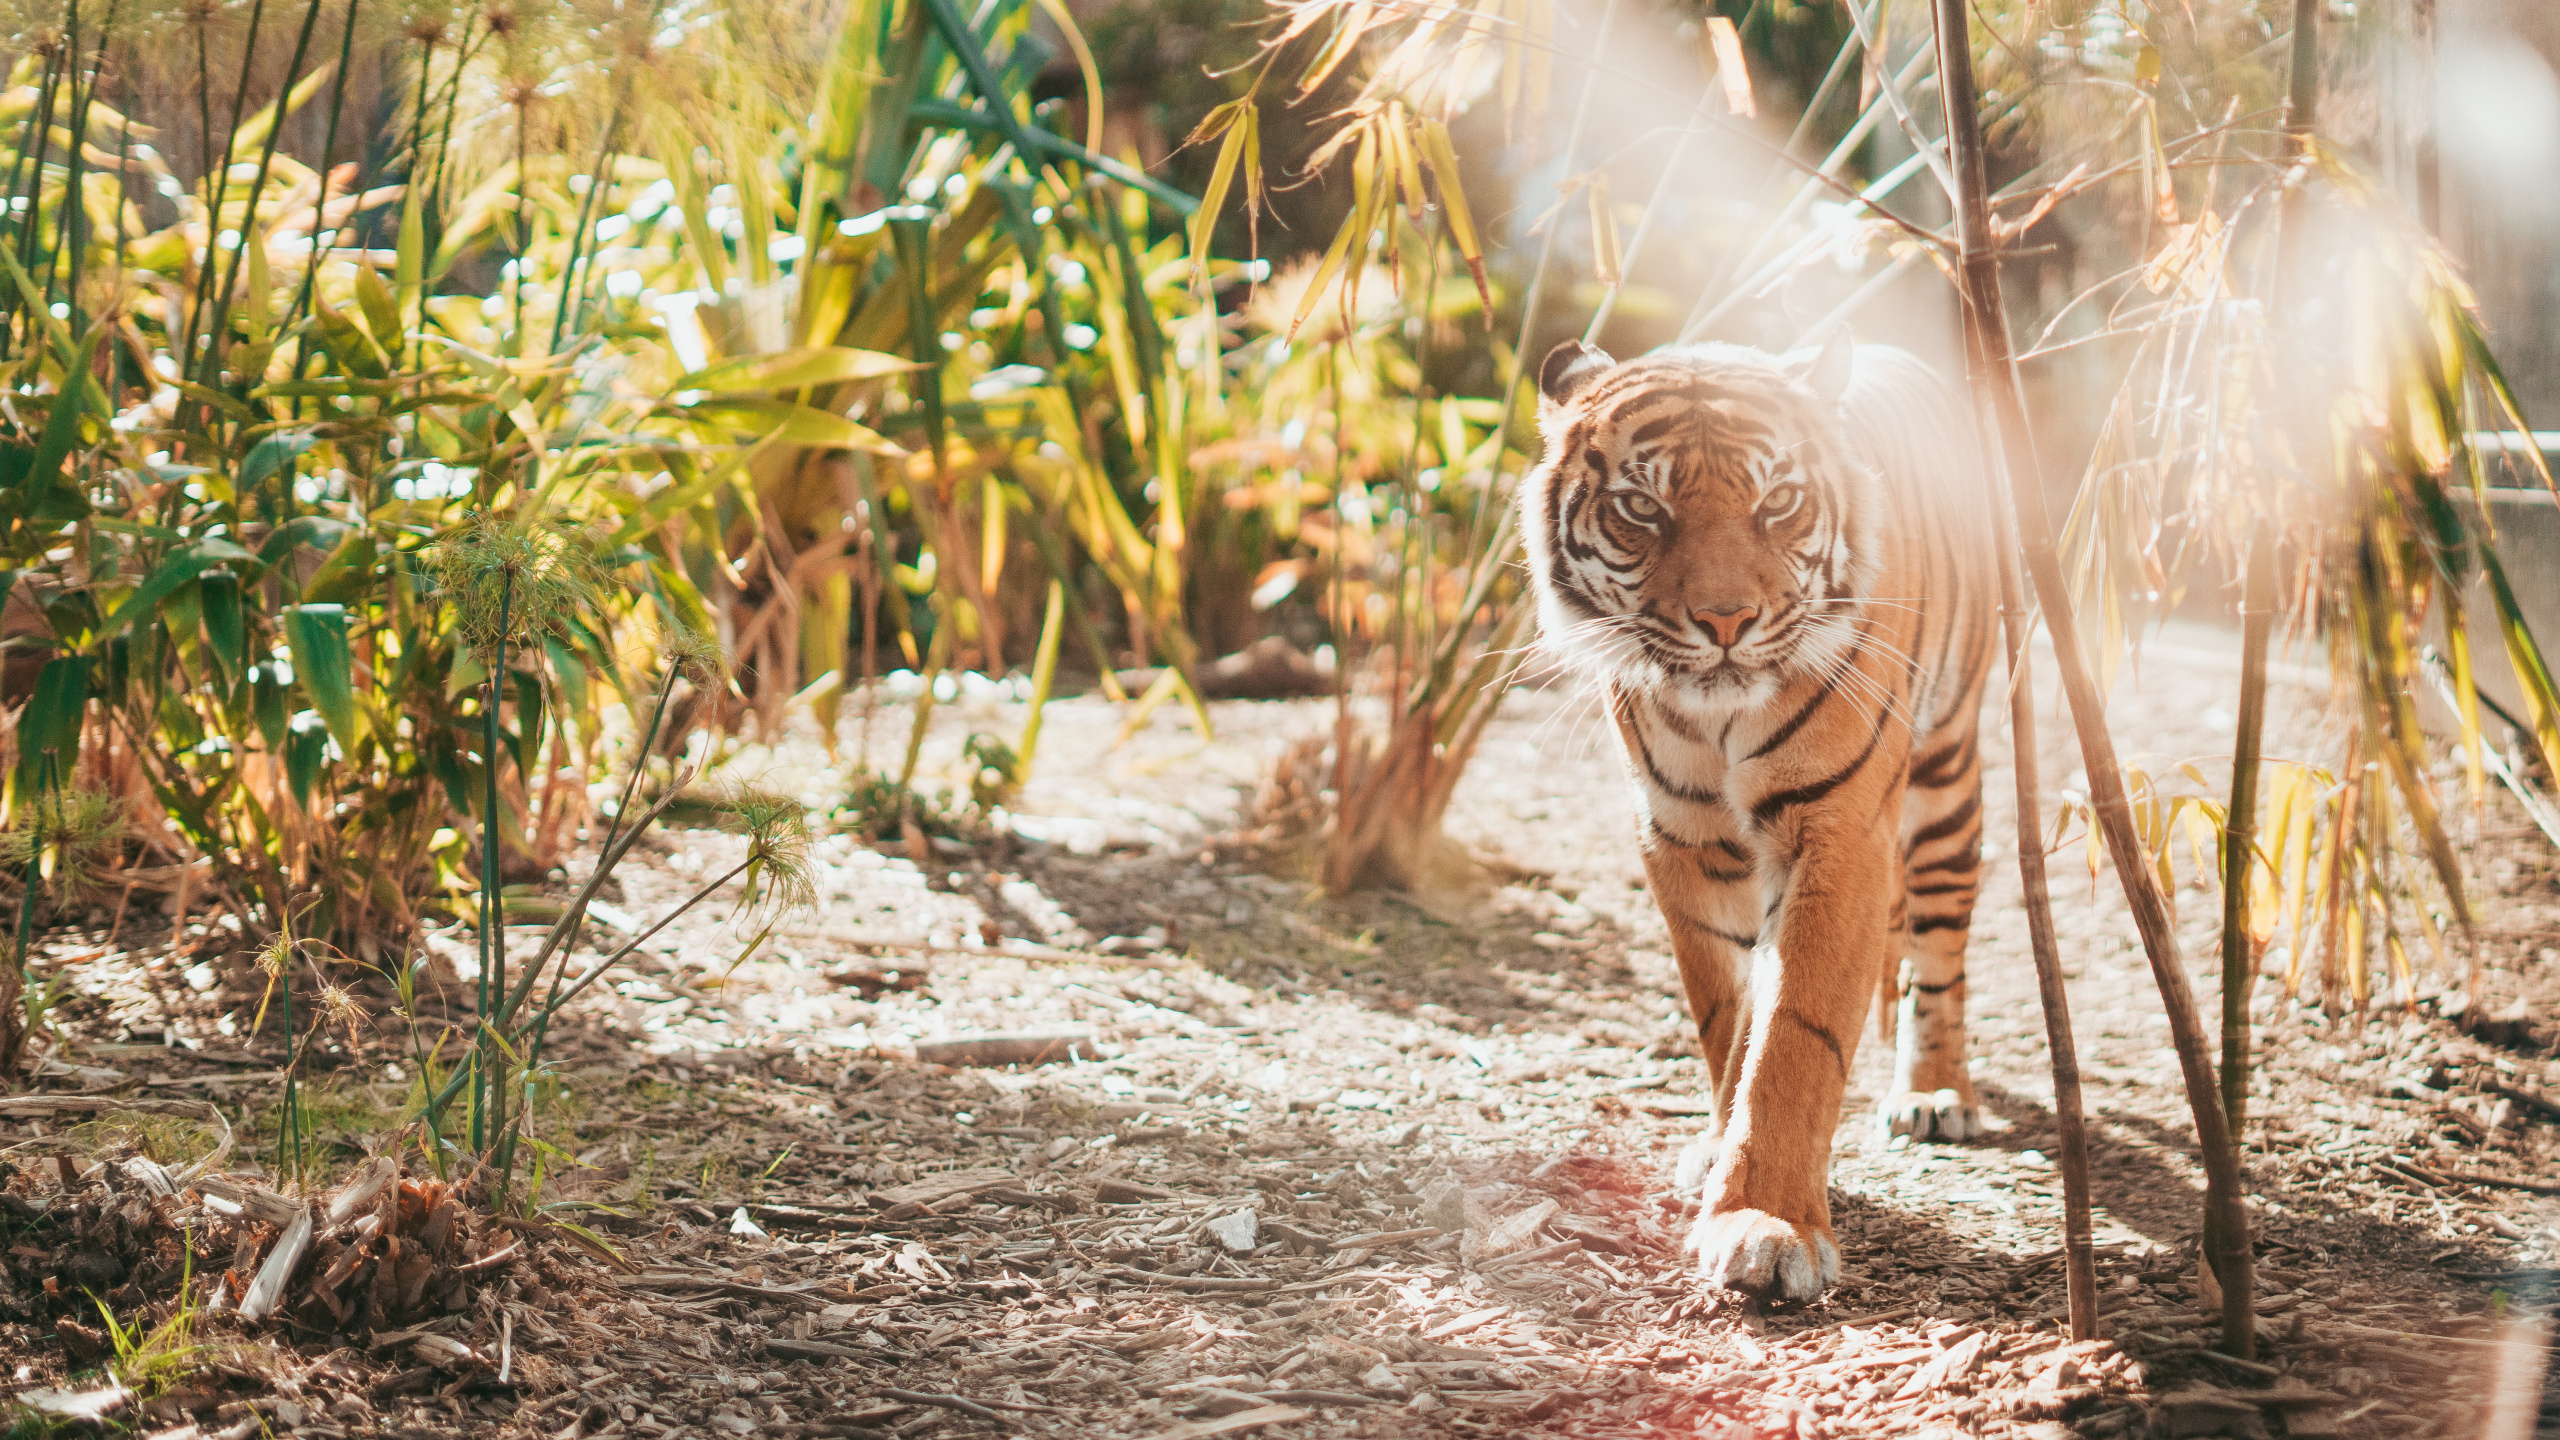 老虎, 孟加拉虎, 野生动物, 陆地动物, 猫科 壁纸 2560x1440 允许